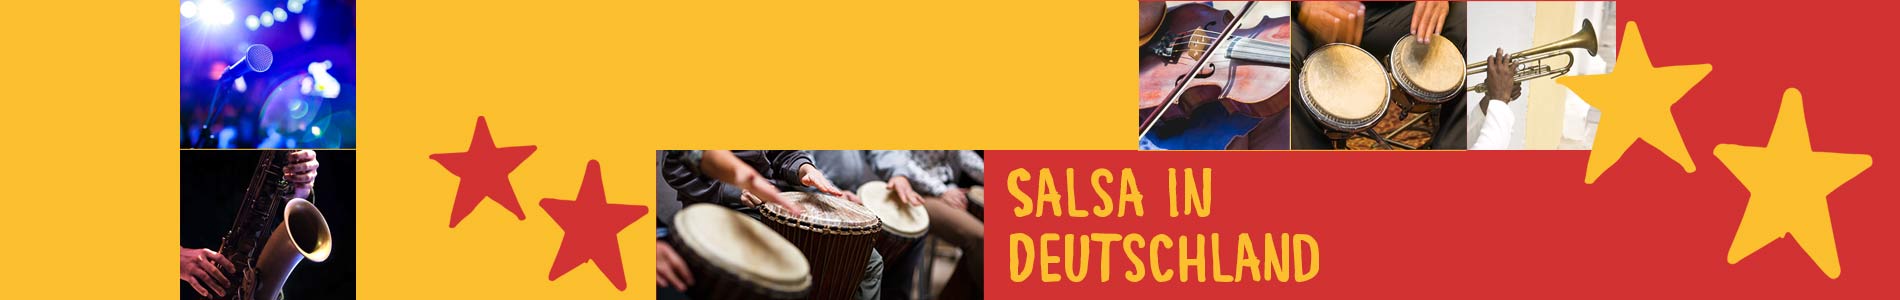 Salsa in Bretzenheim – Salsa lernen und tanzen, Tanzkurse, Partys, Veranstaltungen